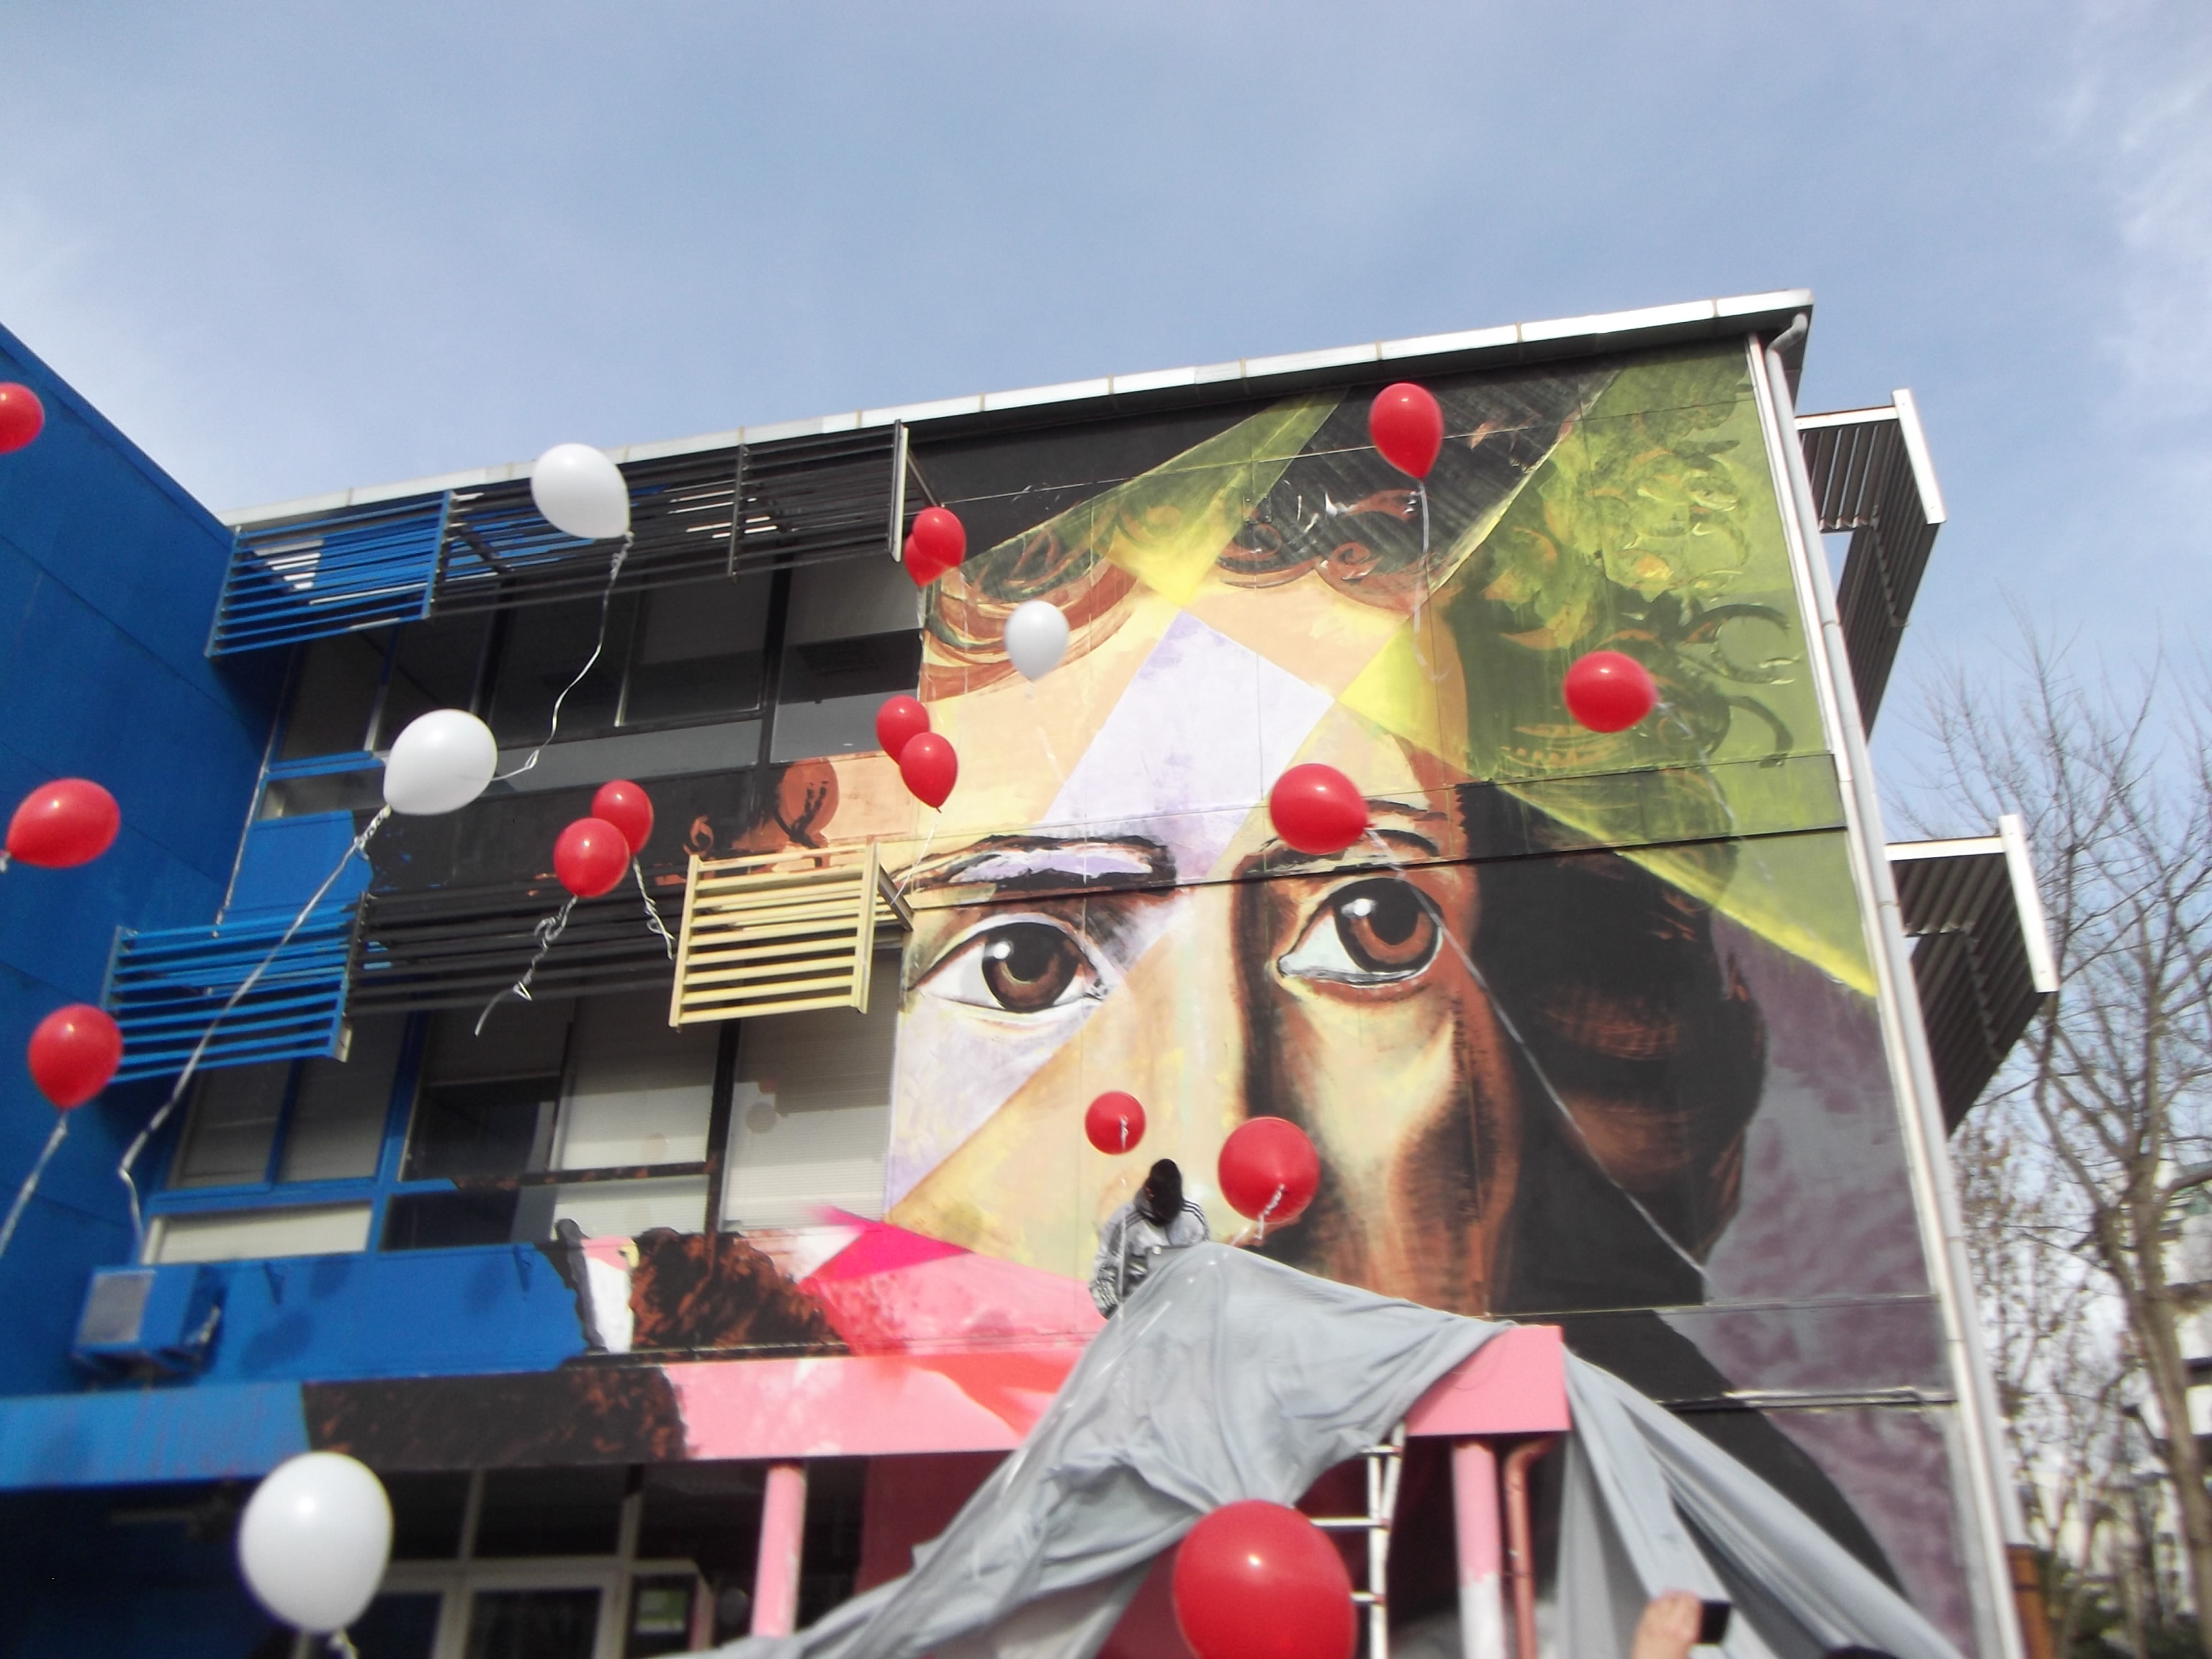 Diritto d'autore e street art: che tutela per gli writers?